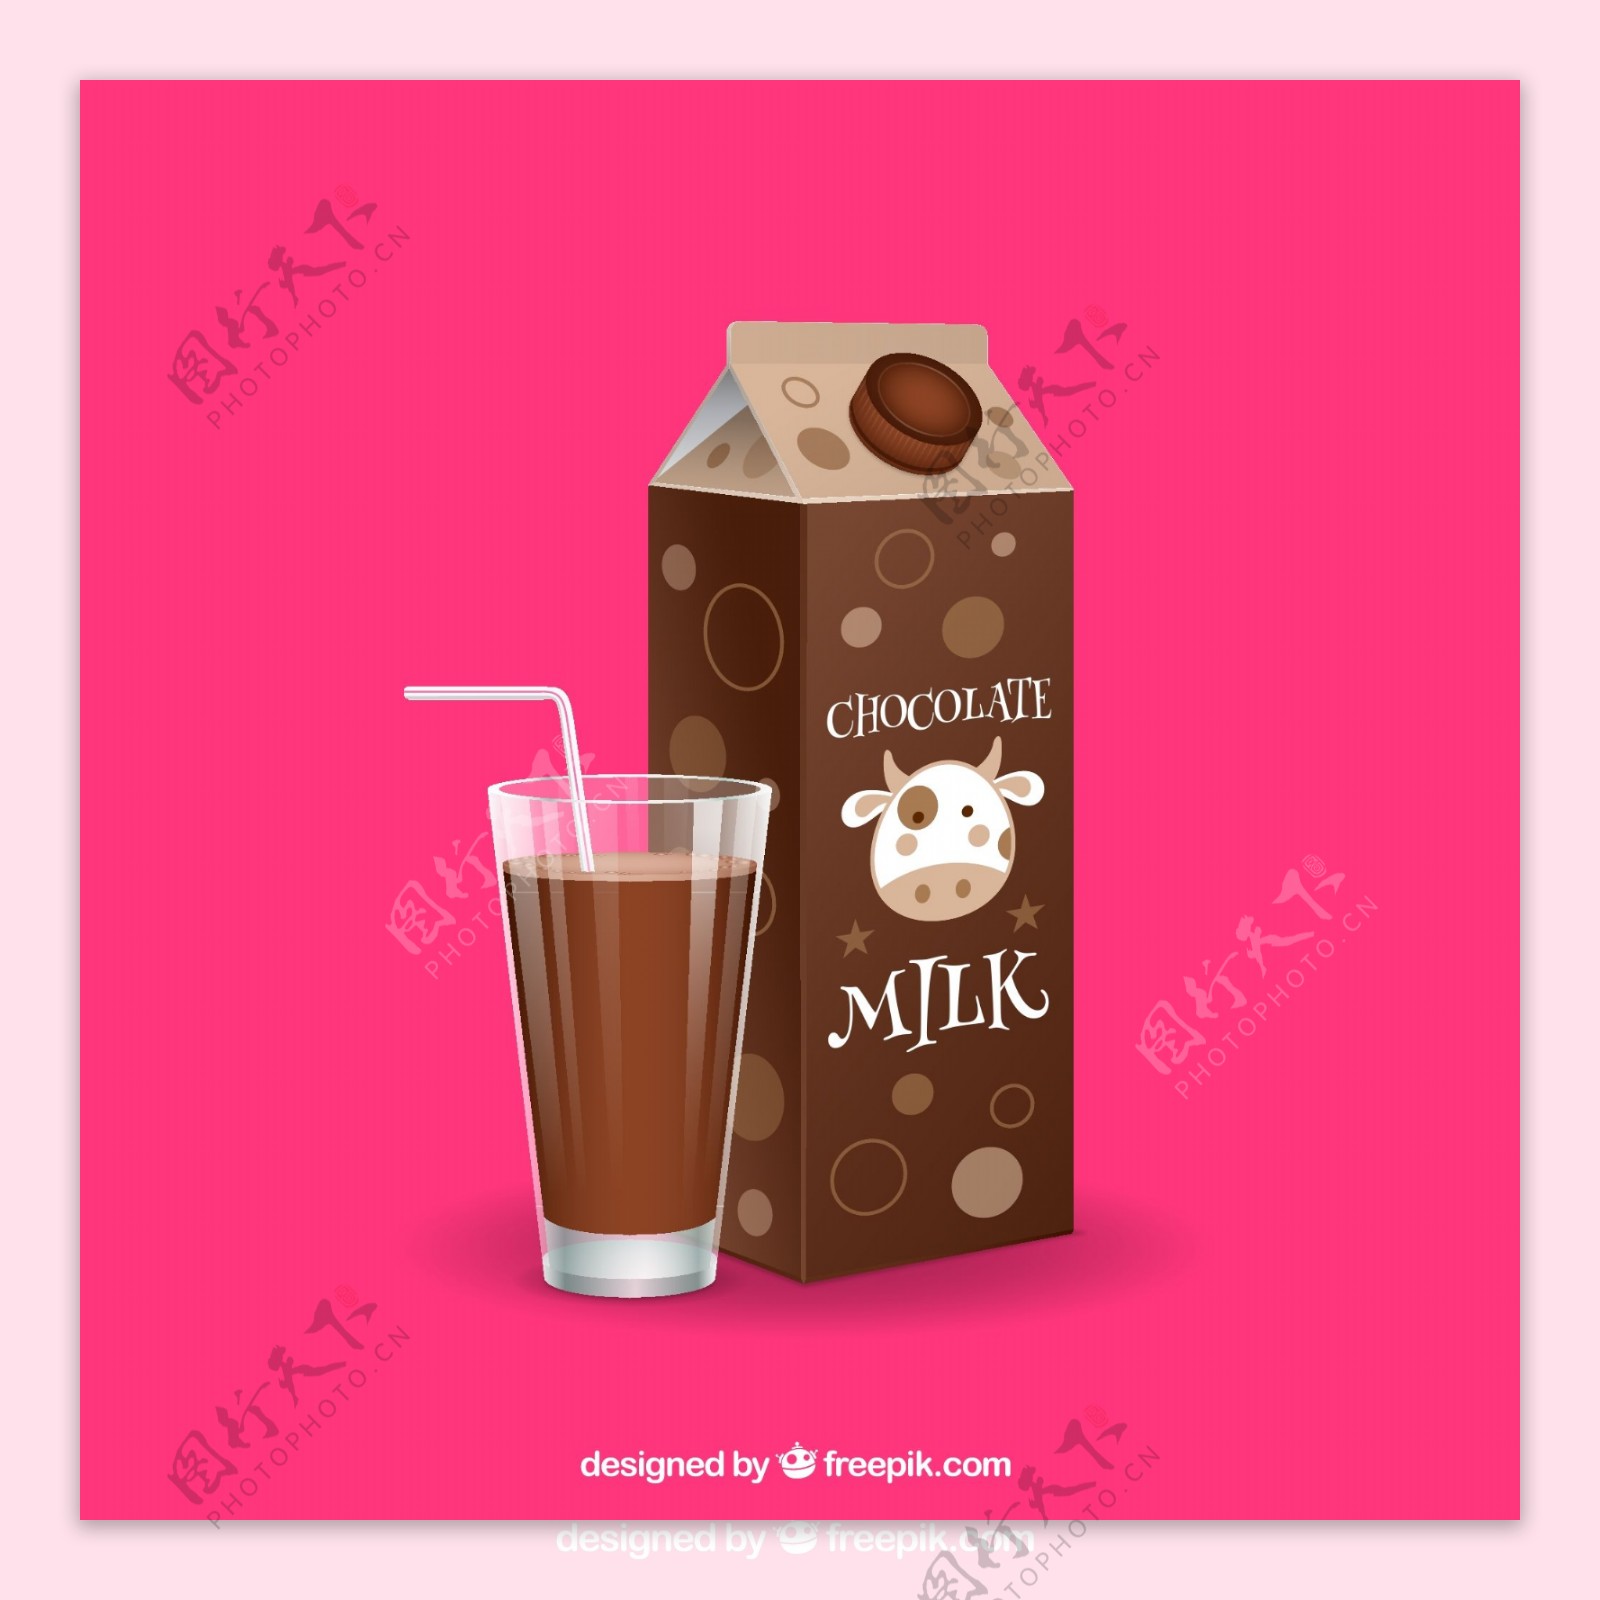 美味巧克力牛奶和玻璃杯矢量素材图片